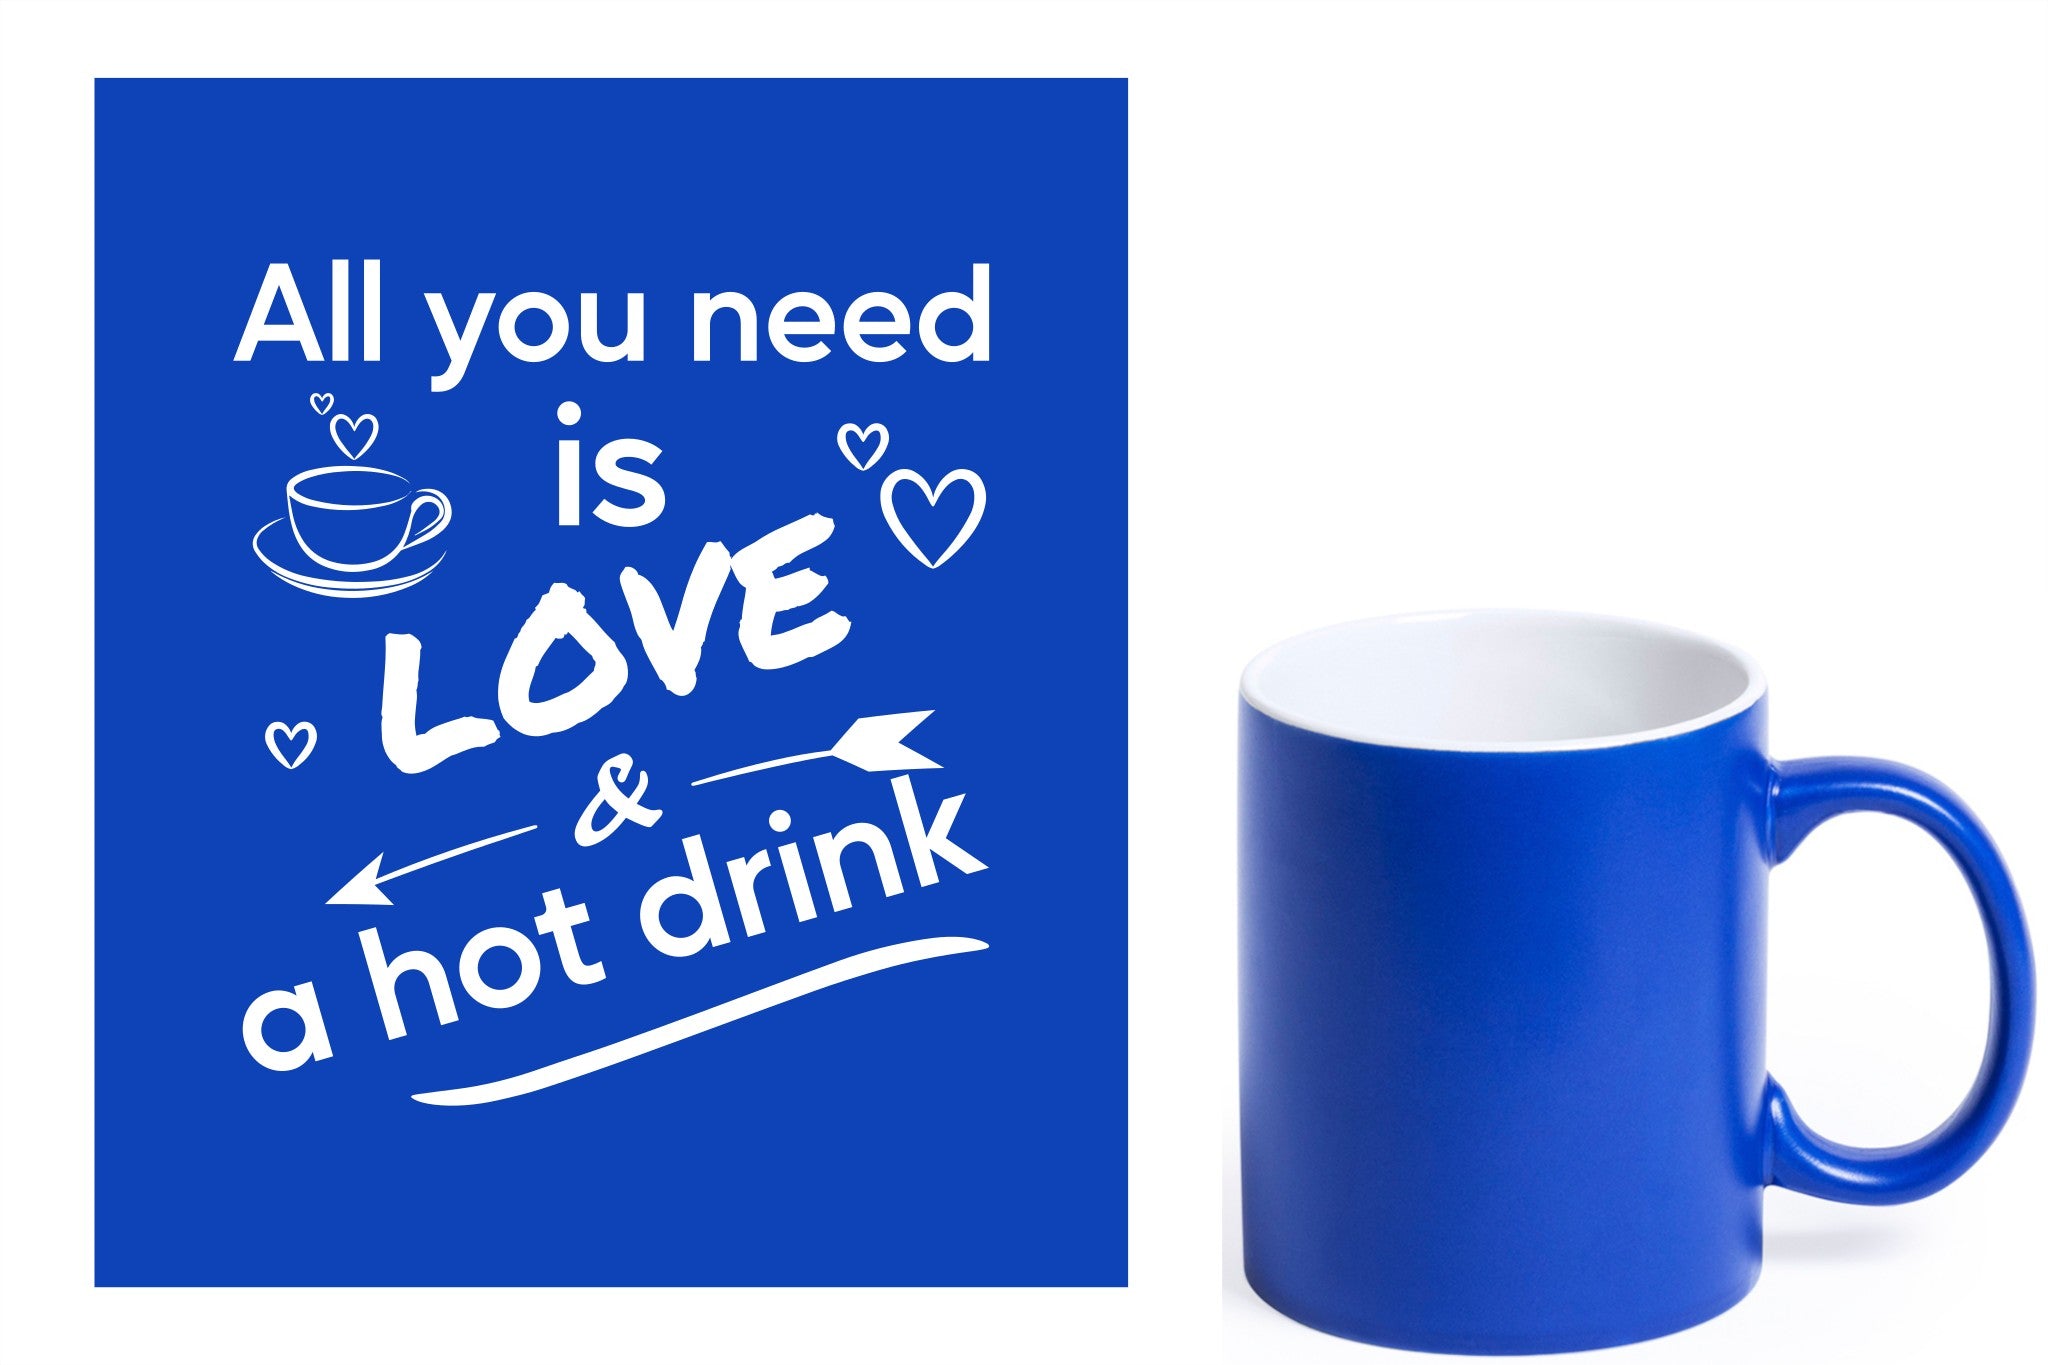 Blauwe keramische mok met witte gravure  'All you need is love & a hot drink'.